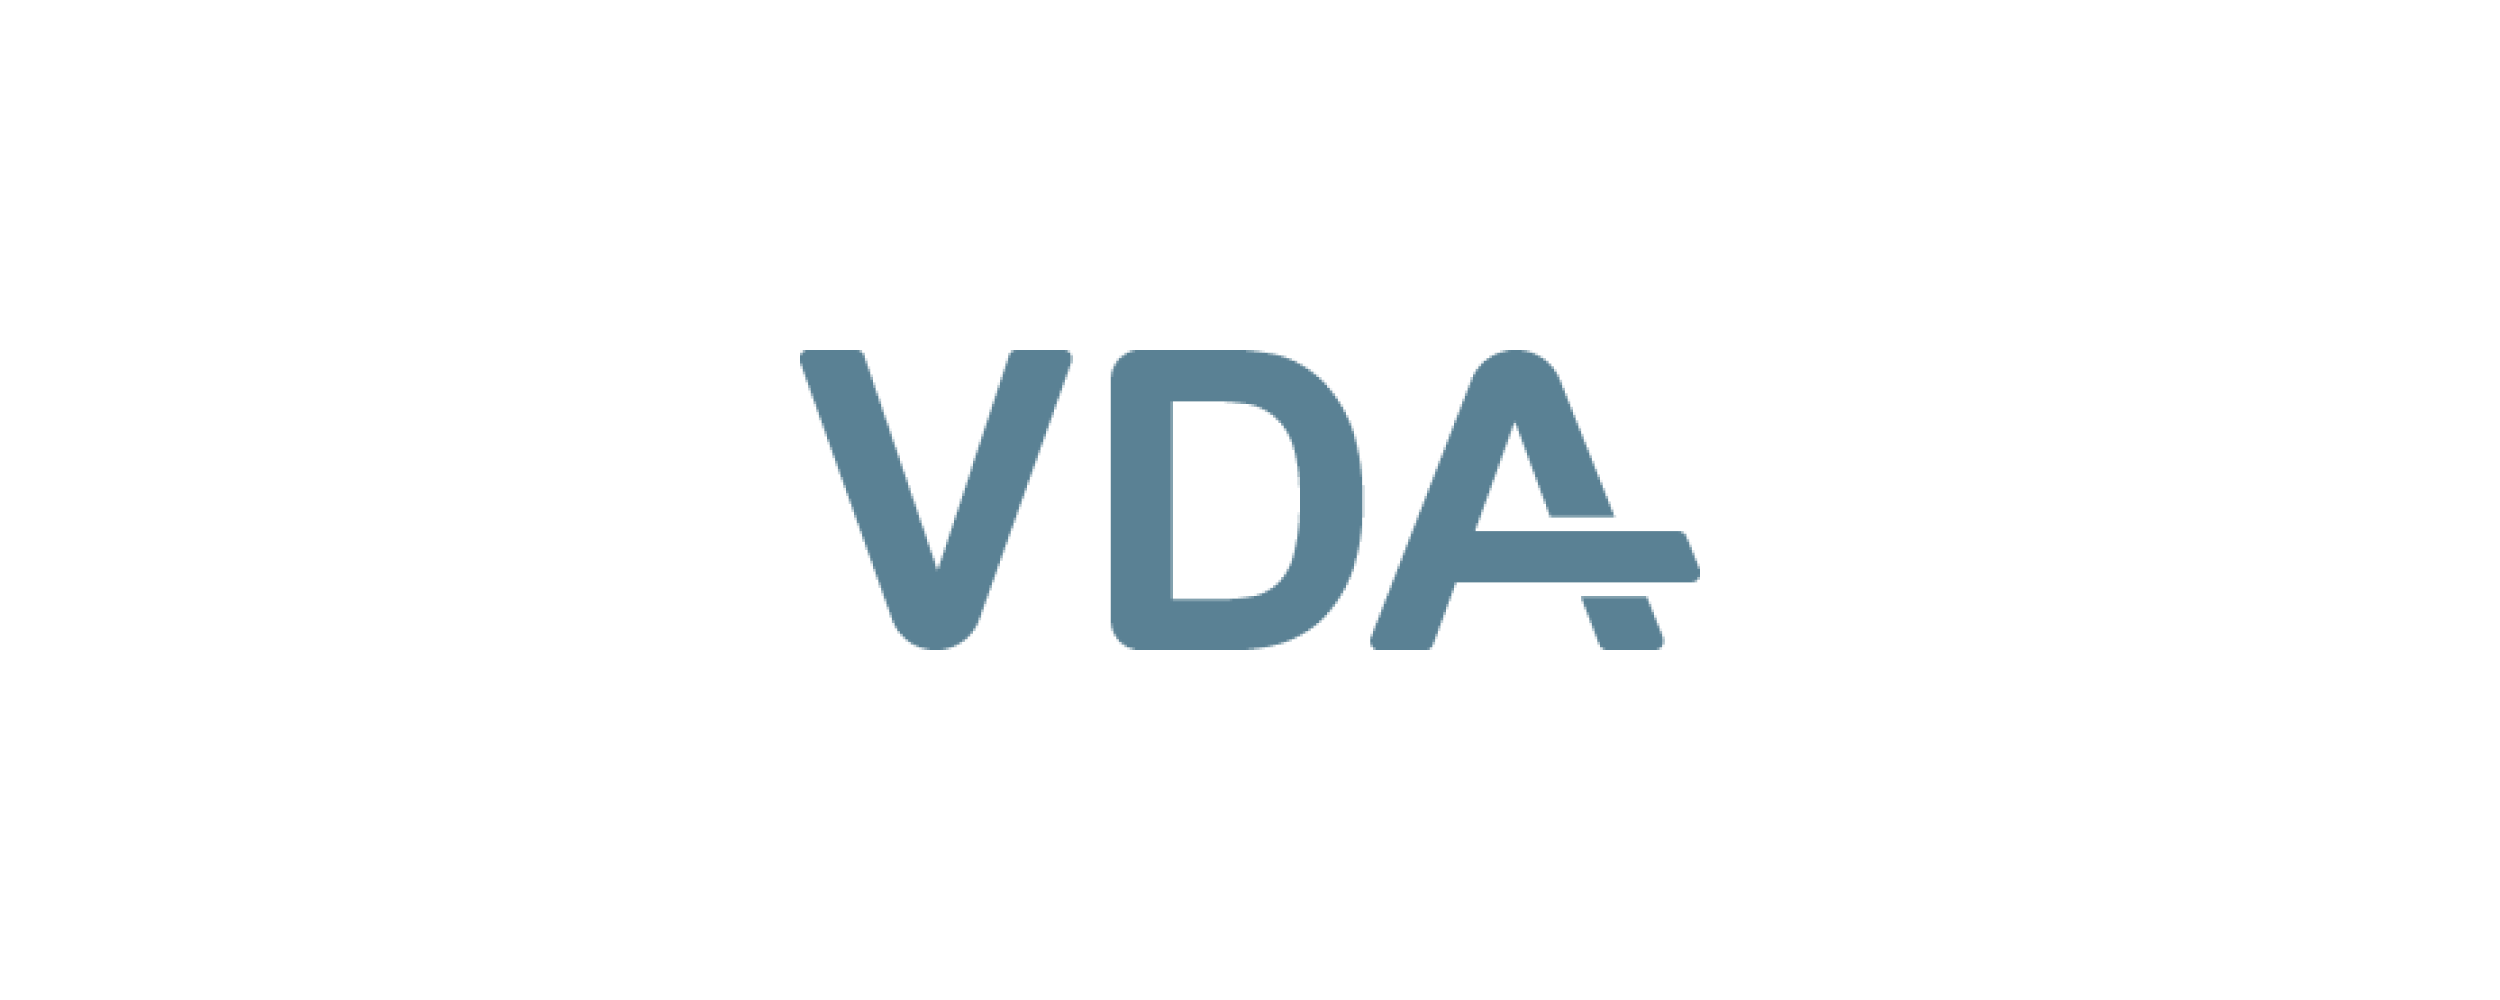 logo-vda.png